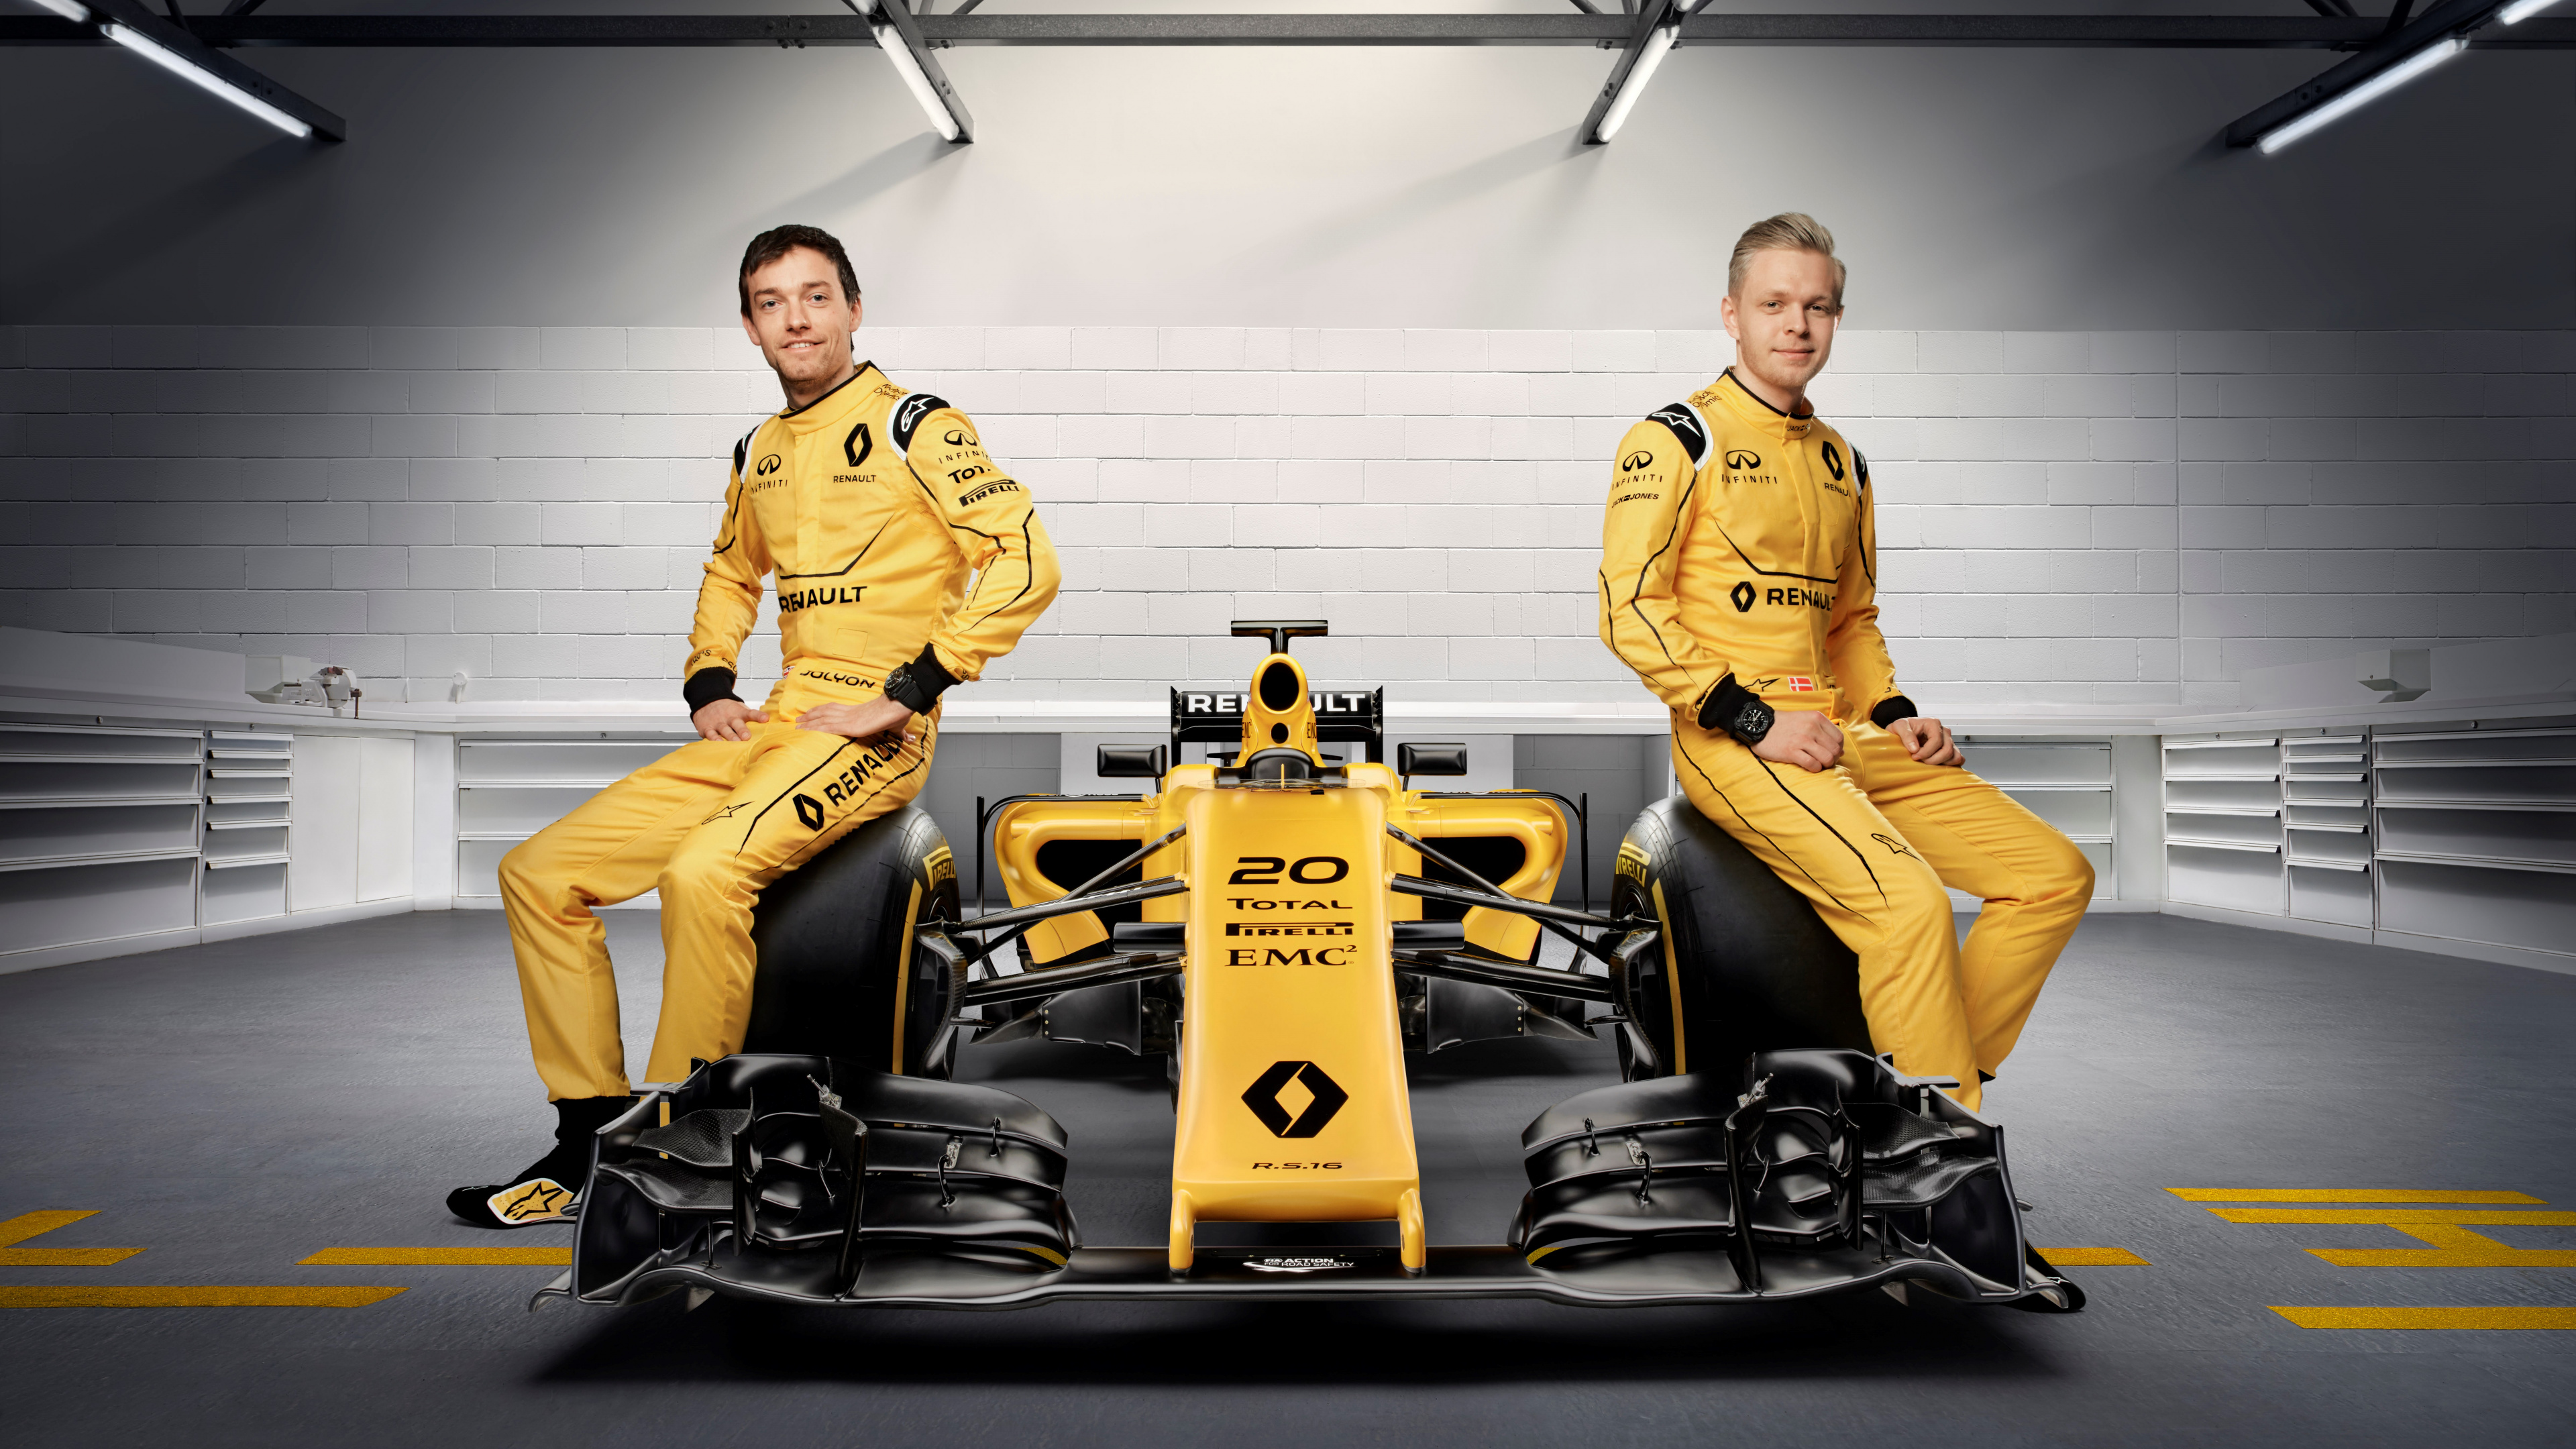 Обои 2016 Формула Один Чемпионат Мира, автогонки, Рено, желтый, команда в разрешении 3840x2160